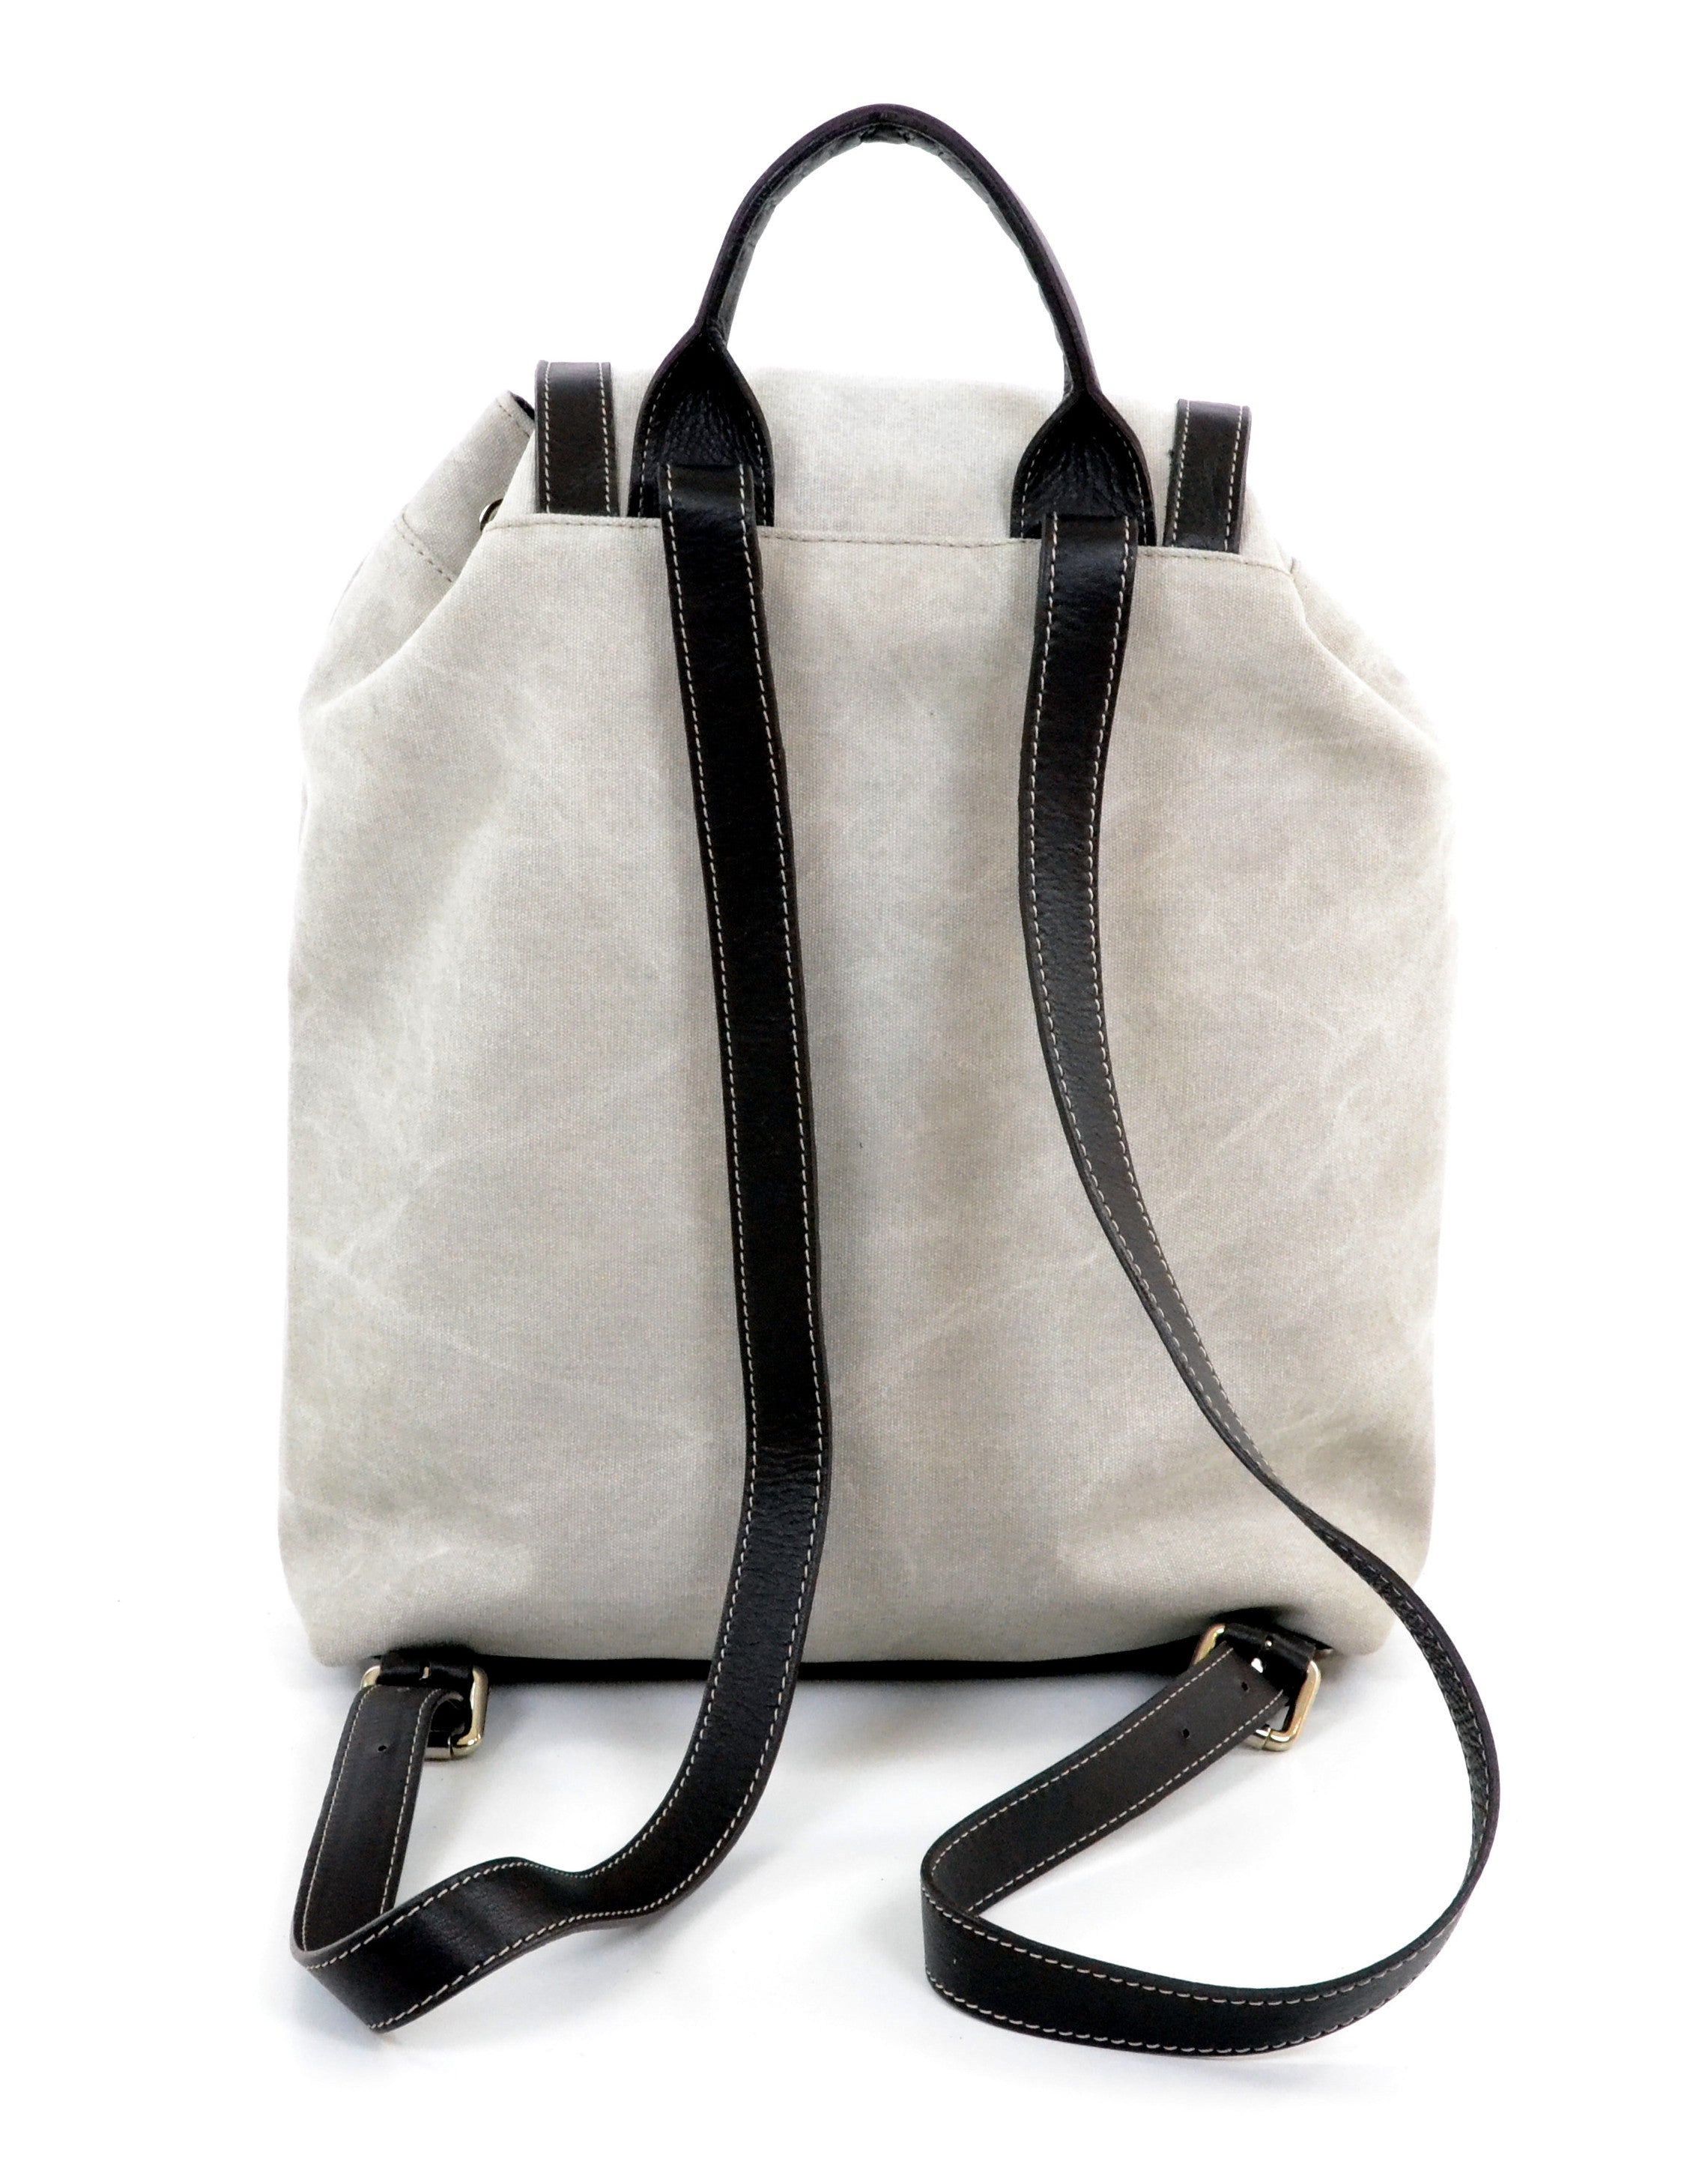 BU003 grey backpack